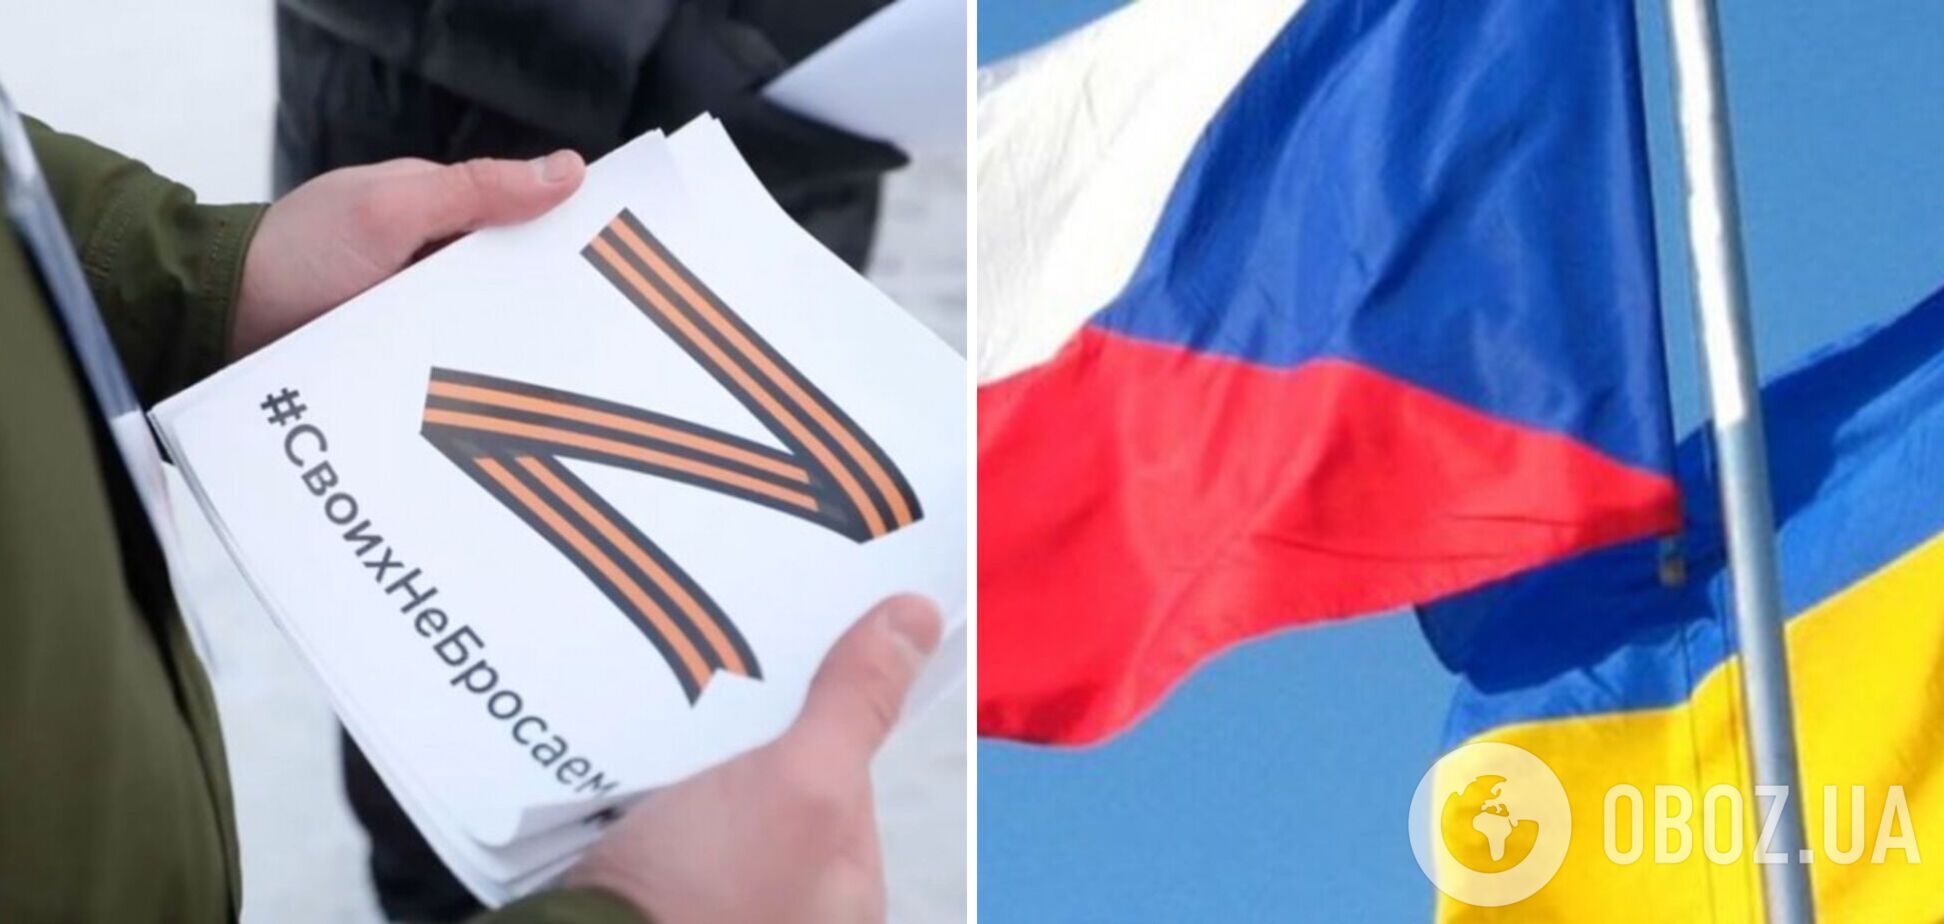 В Чехии заявили, что демонстрацию символа 'Z' могут приравнять к демонстрации свастики